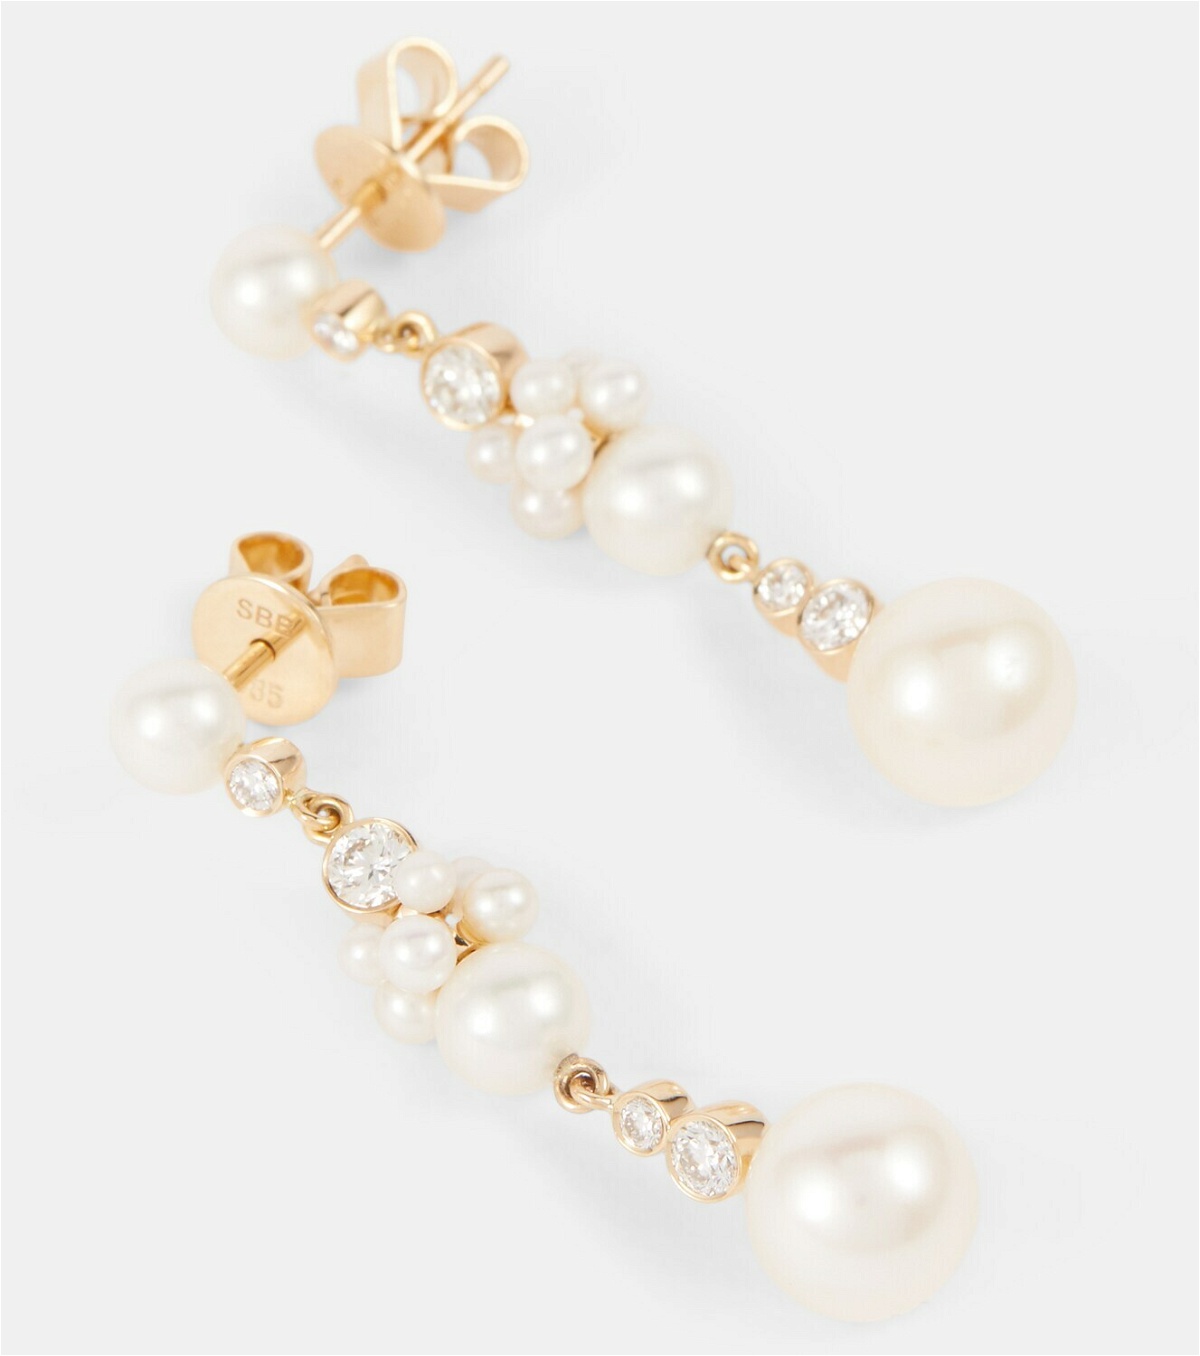 Sophie Bille Brahe - Rêve de Tulipe 14kt gold earrings with diamonds ...